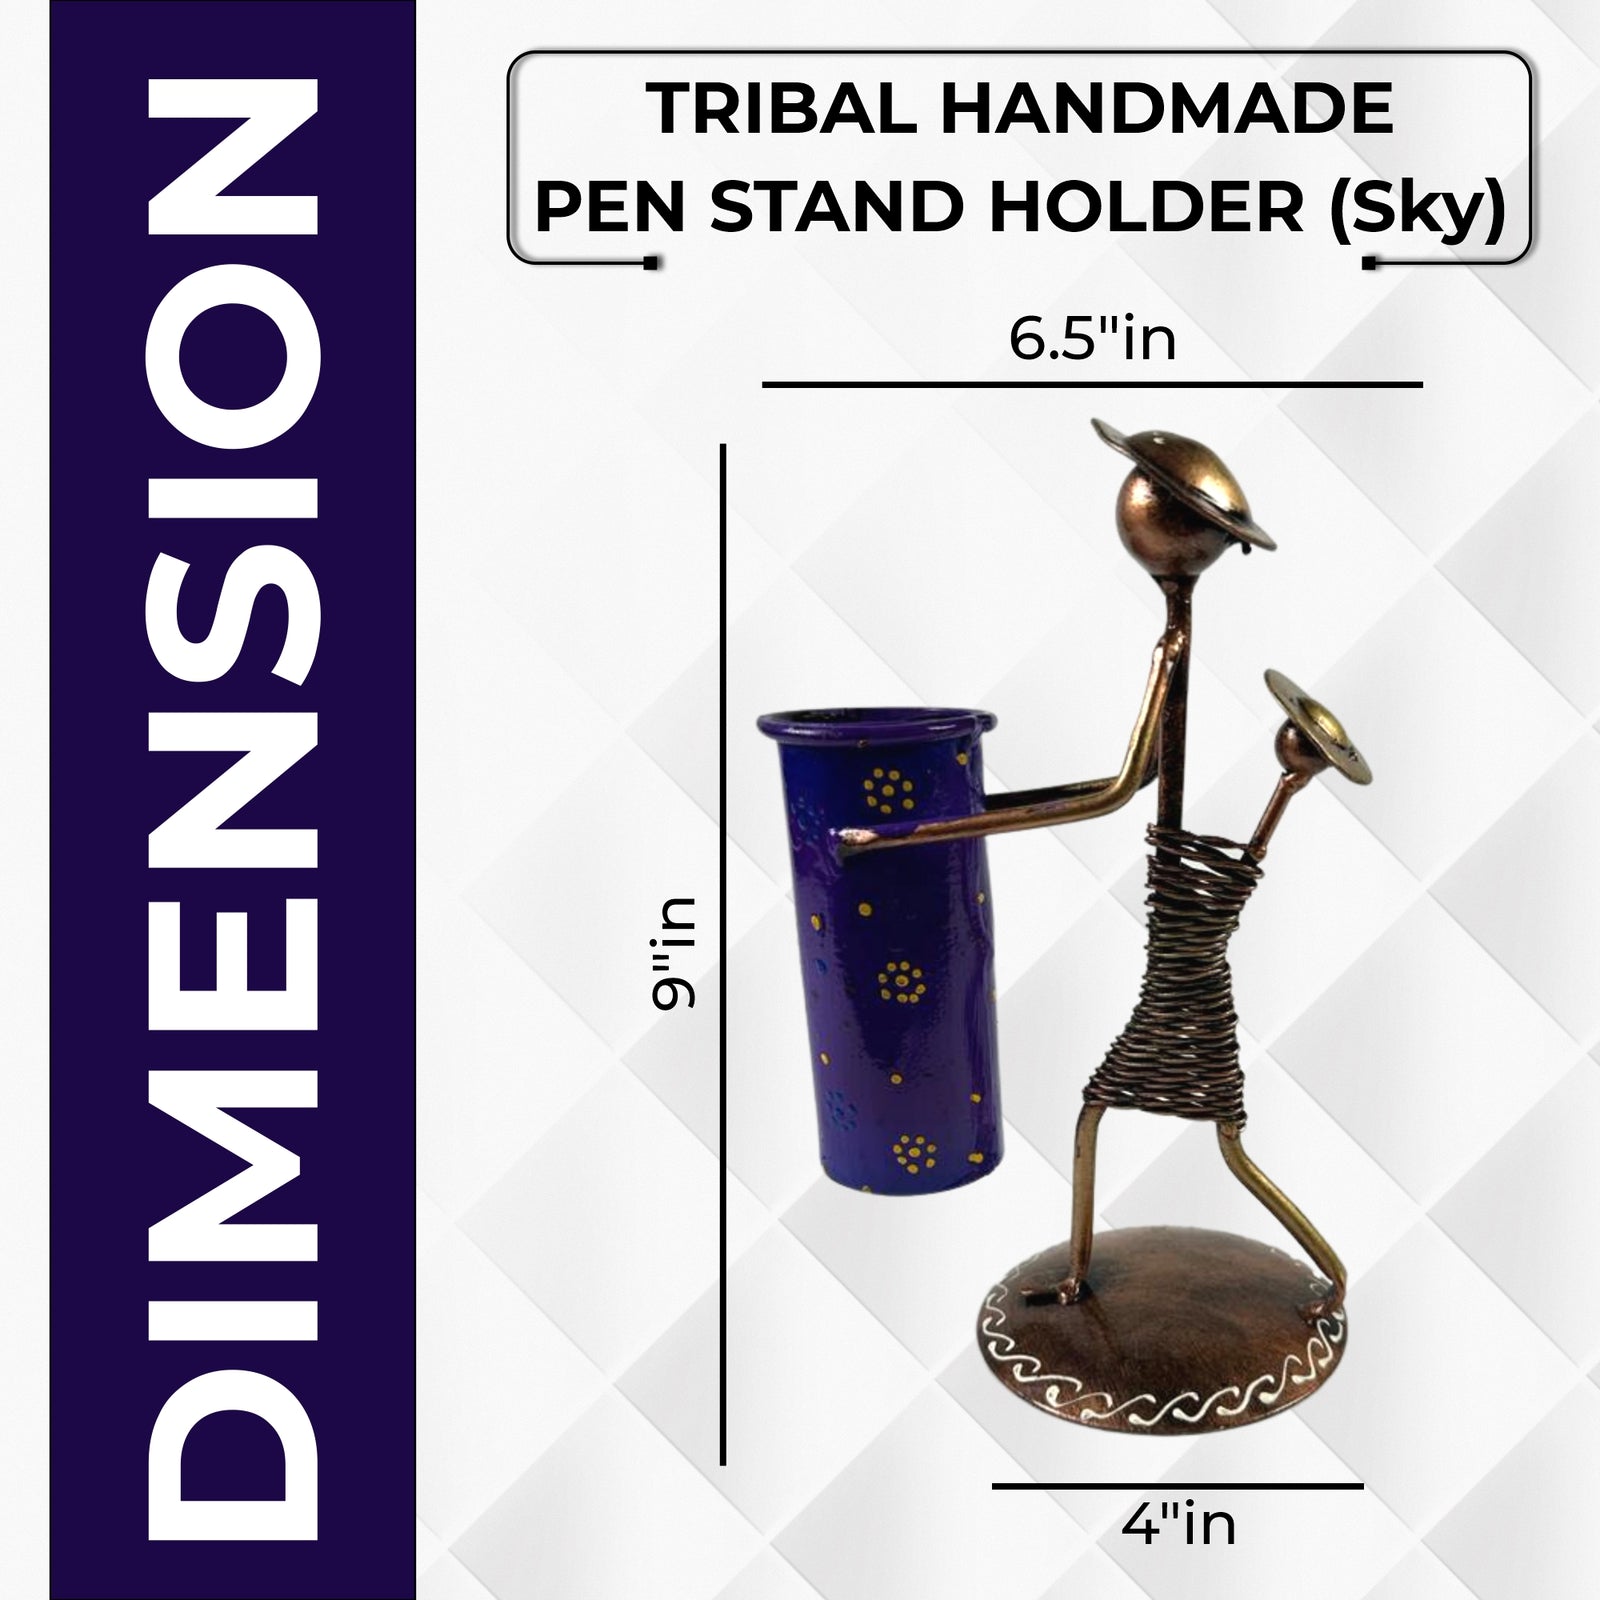 Tribal Handmade Pen Stand Holder (Sky)